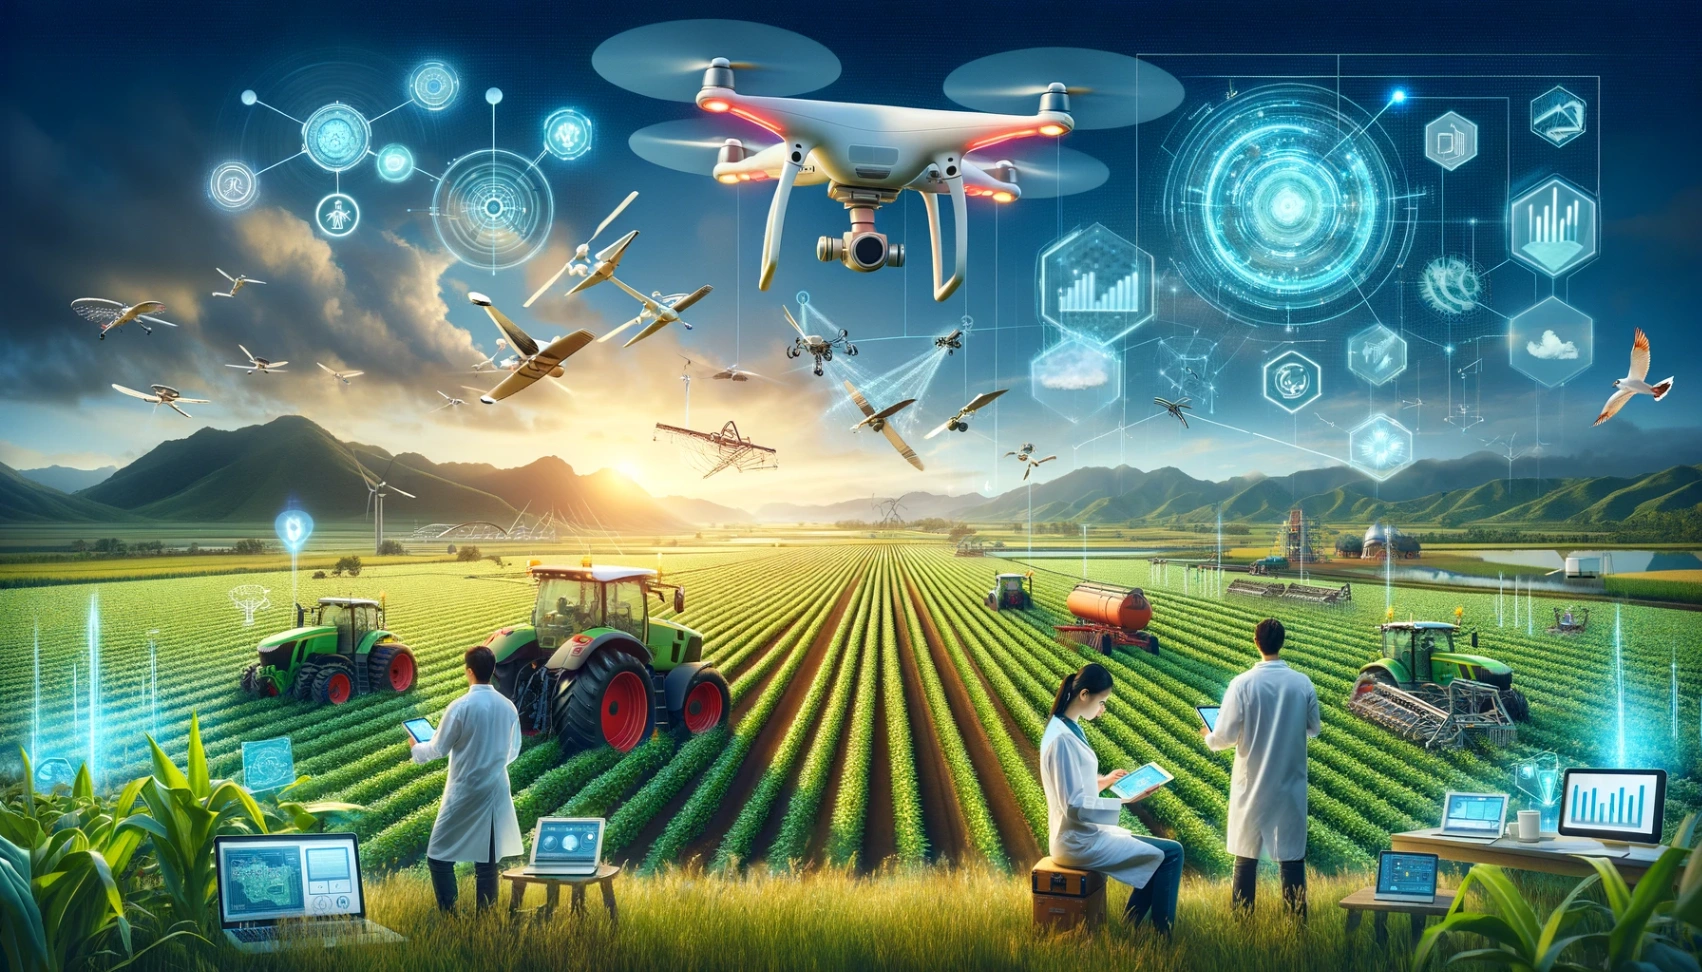 Le competenze principali di cui hai bisogno per avere successo nei lavori legati alle tecnologie dell'agricoltura di precisione